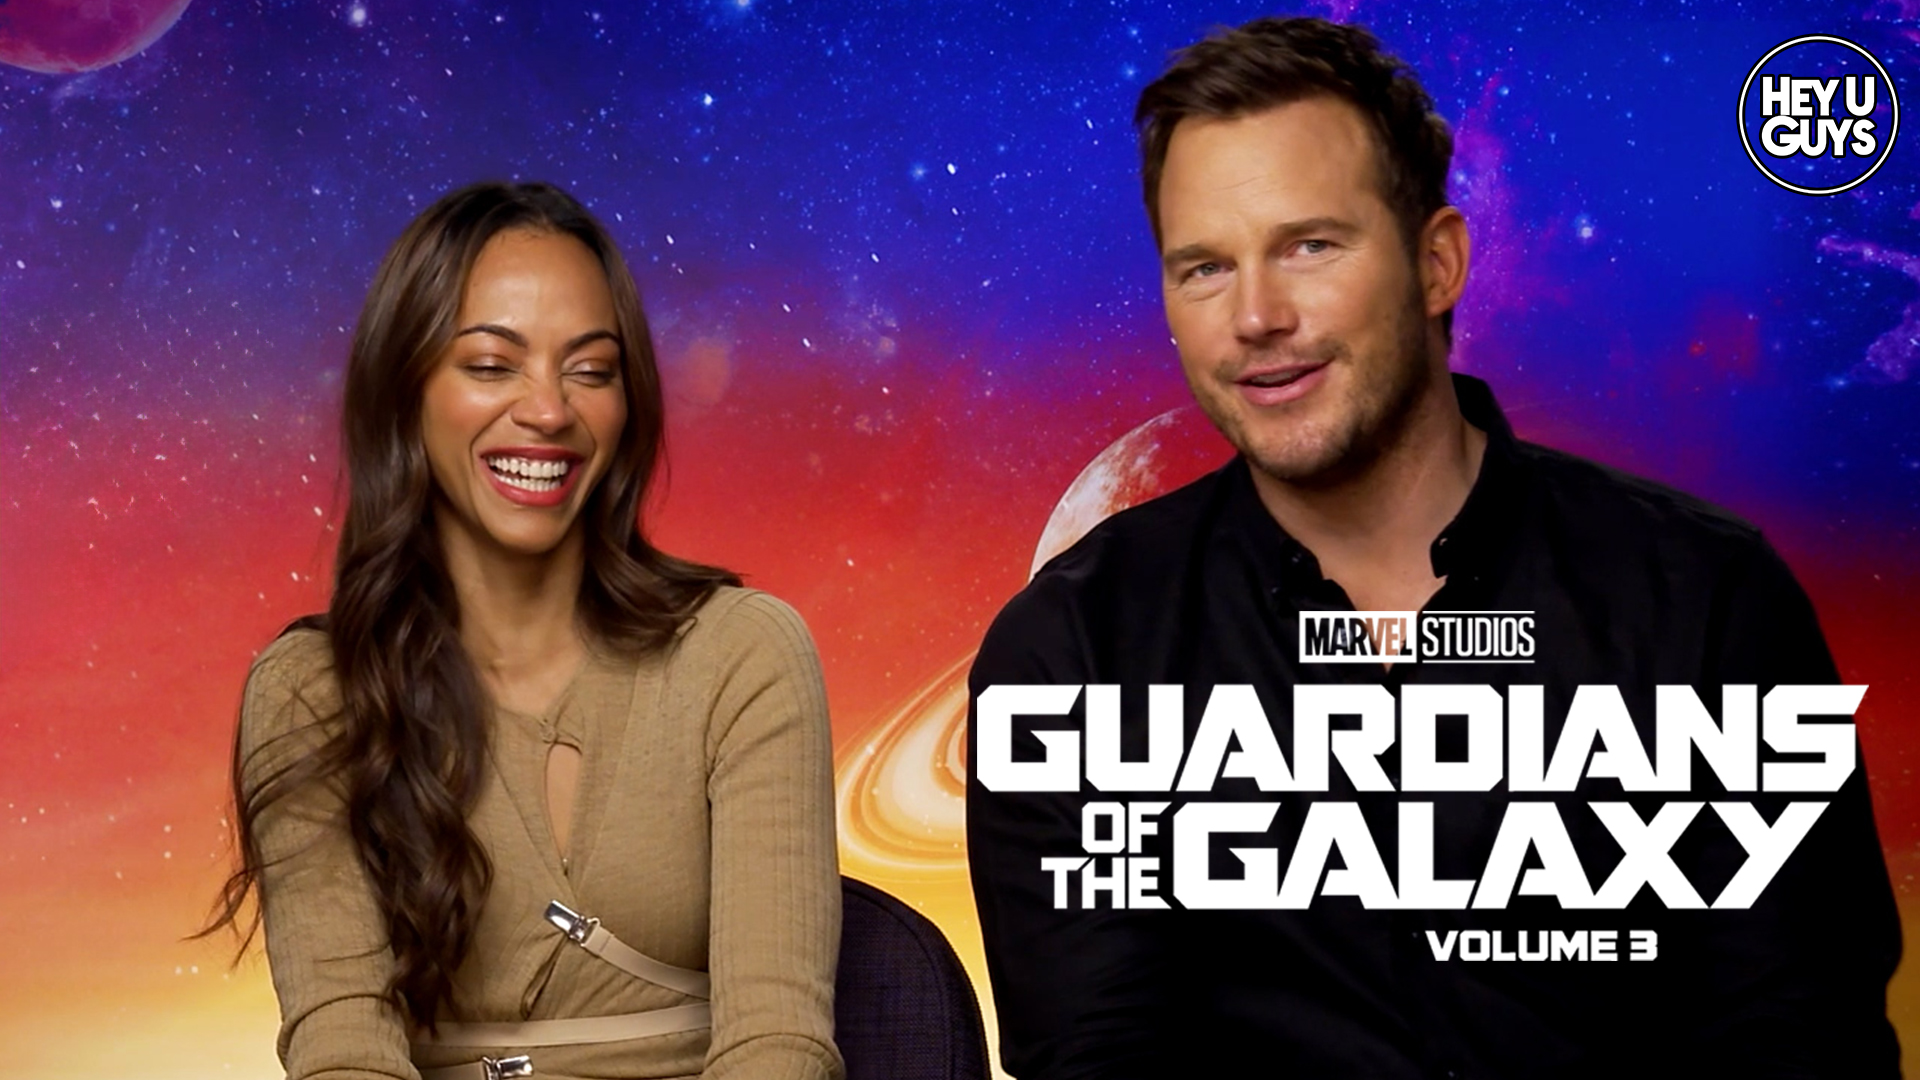 Chris-Pratt-&-Zoe-Saldana---Guardians-of-the-Galaxy-3